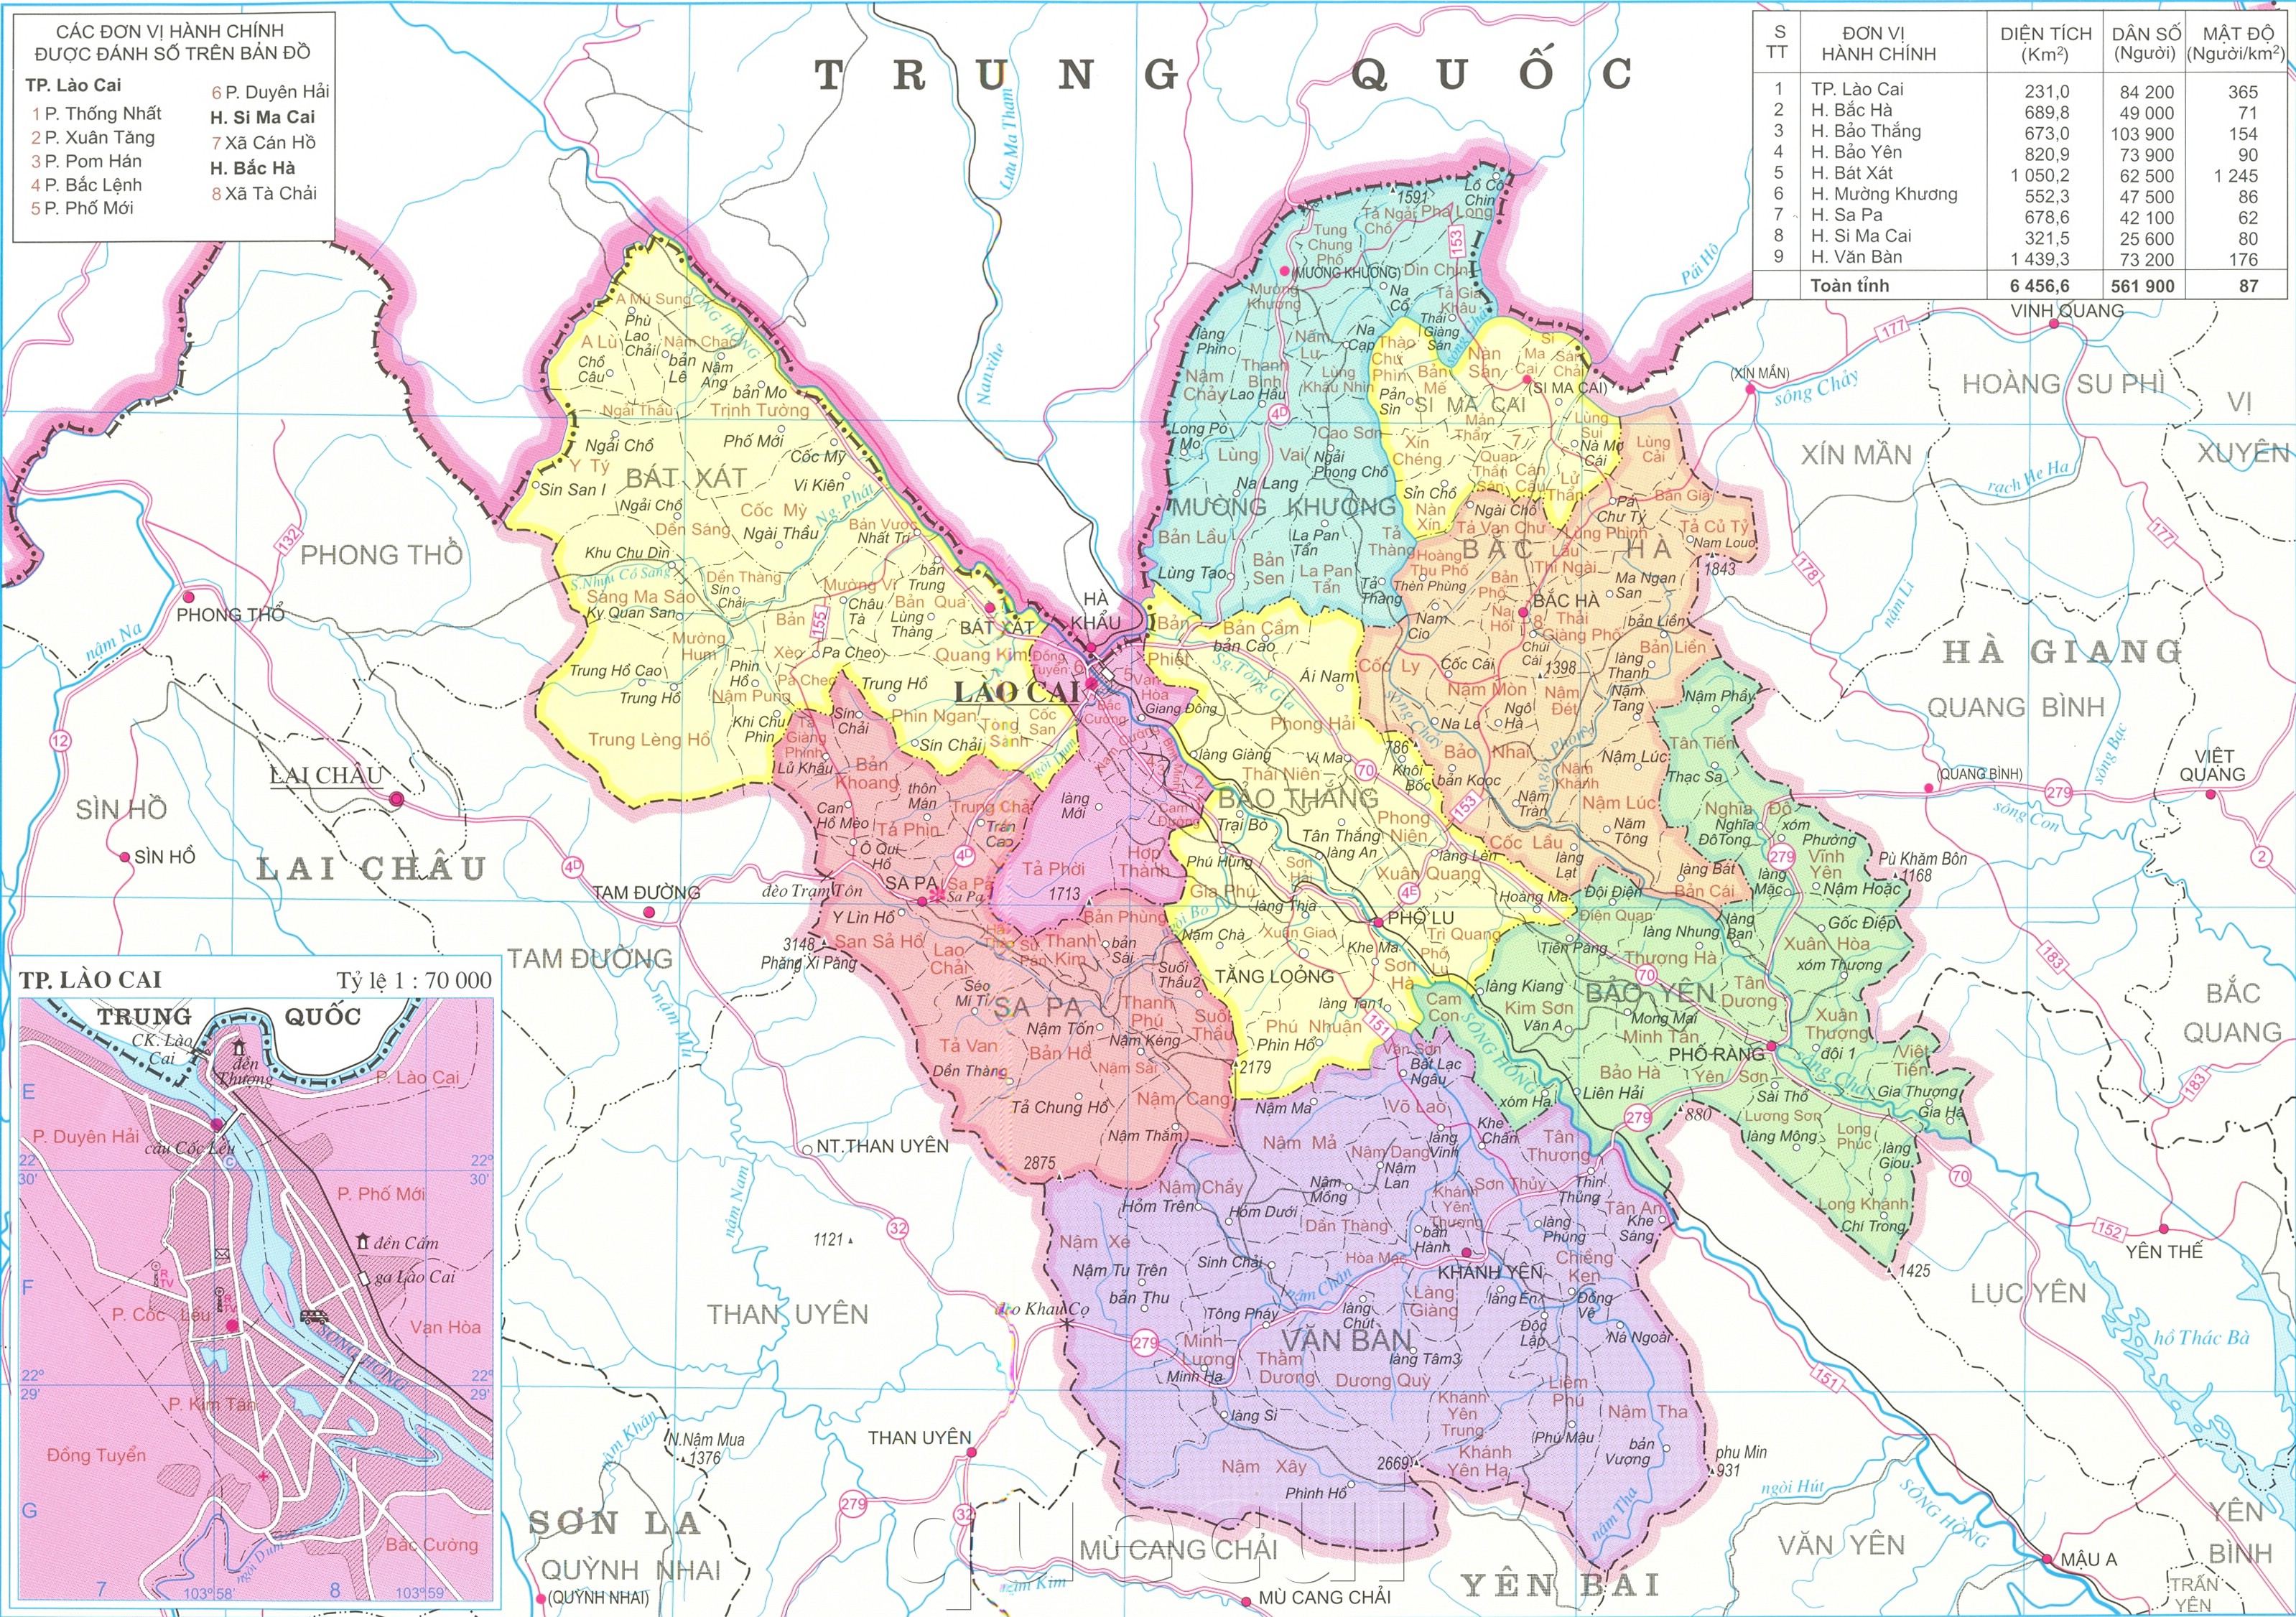 Bản đồ hành chính tỉnh Lào Cai năm 2024: Tại năm 2024, bản đồ hành chính tỉnh Lào Cai sẽ cập nhật đầy đủ những thay đổi mới về địa giới hành chính, giúp cho quản lý và phát triển địa phương trở nên hiệu quả hơn.